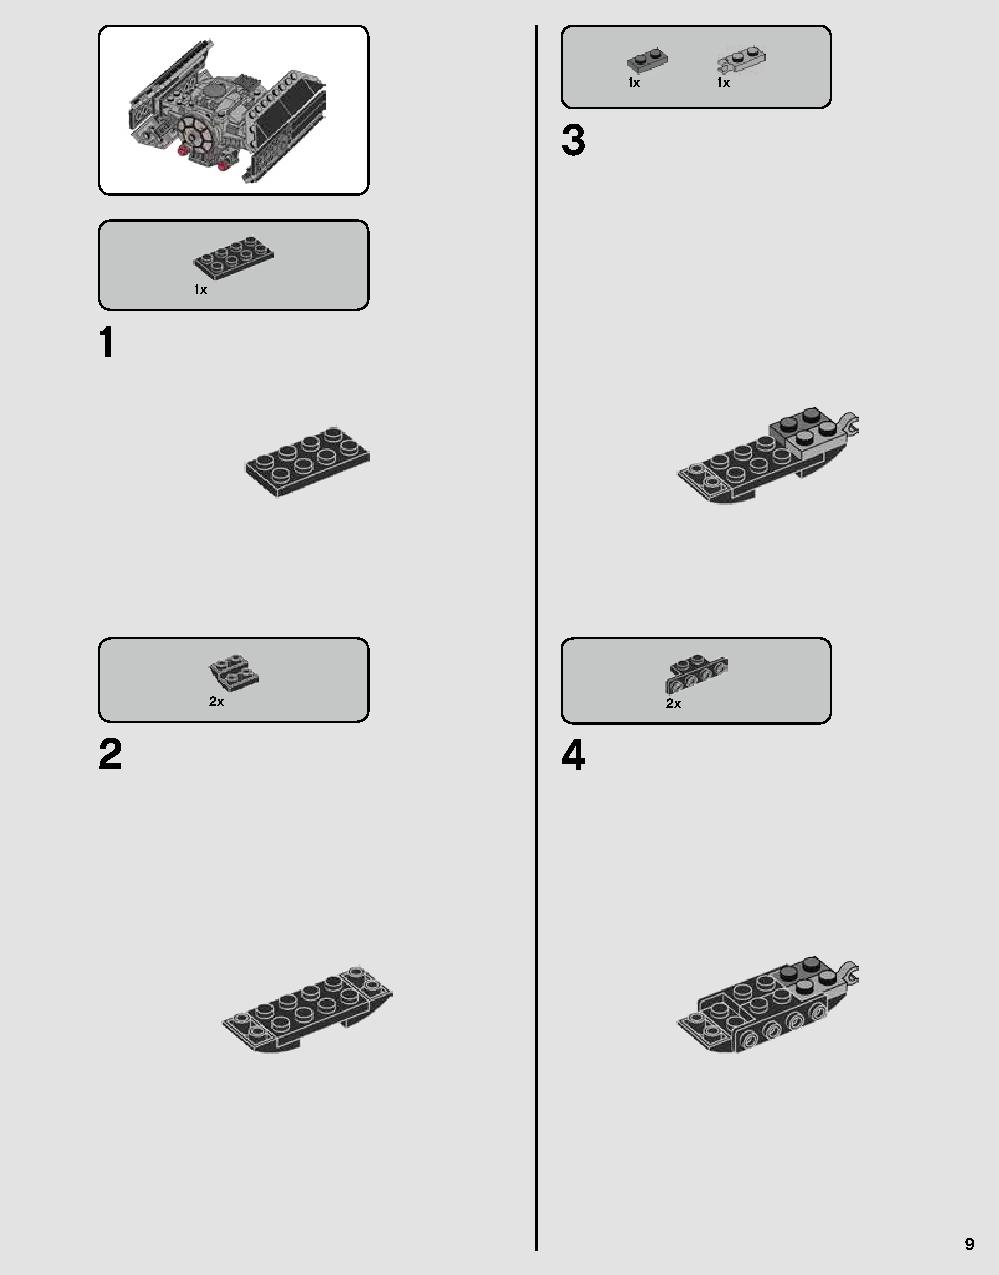 ダース・ベイダーの城 75251 レゴの商品情報 レゴの説明書・組立方法 9 page